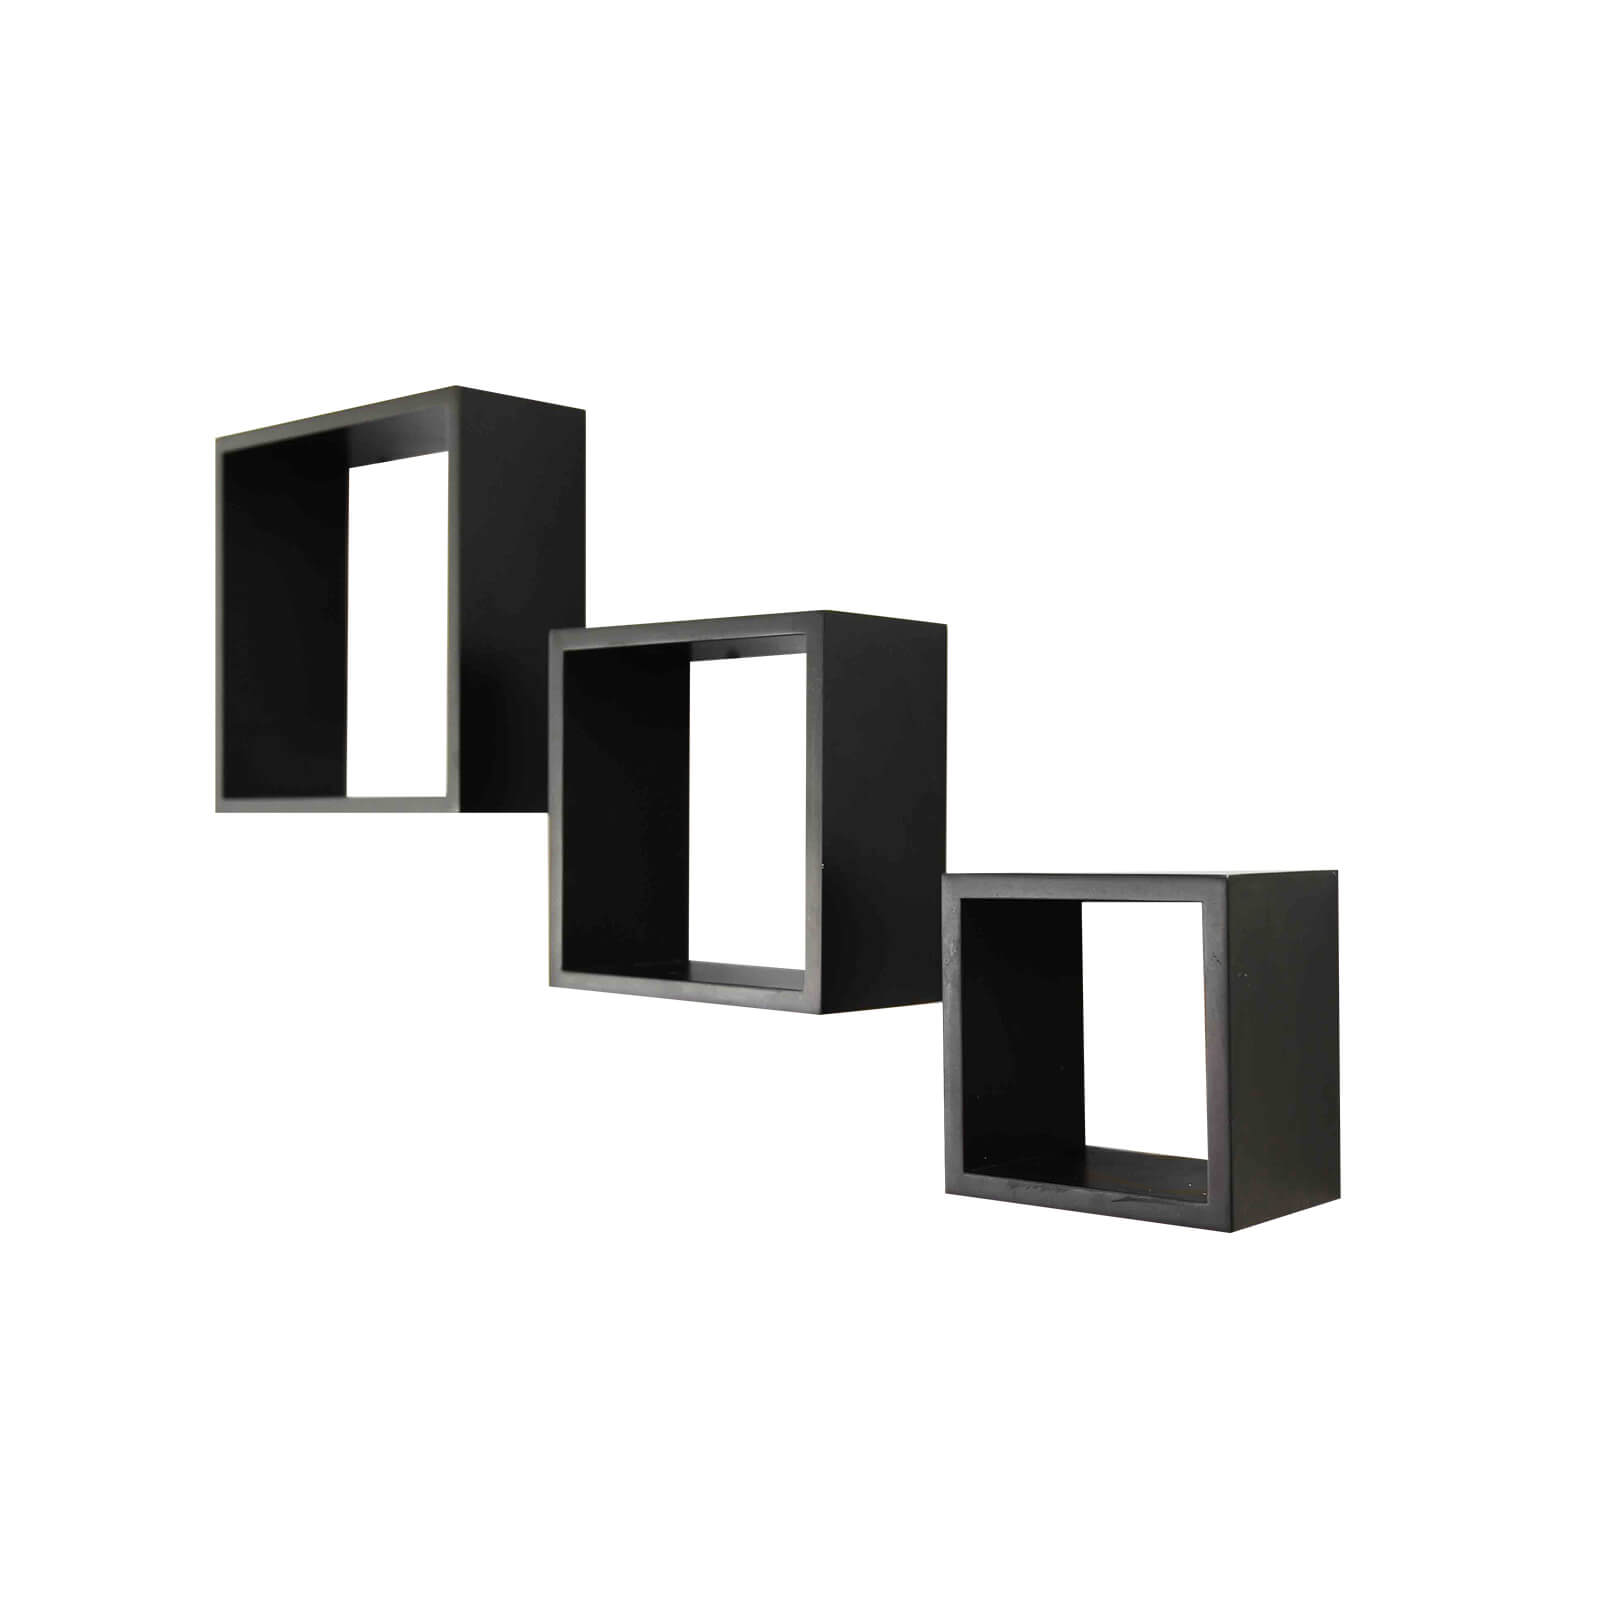 Wall Cubes 3 Pack - Black Matt